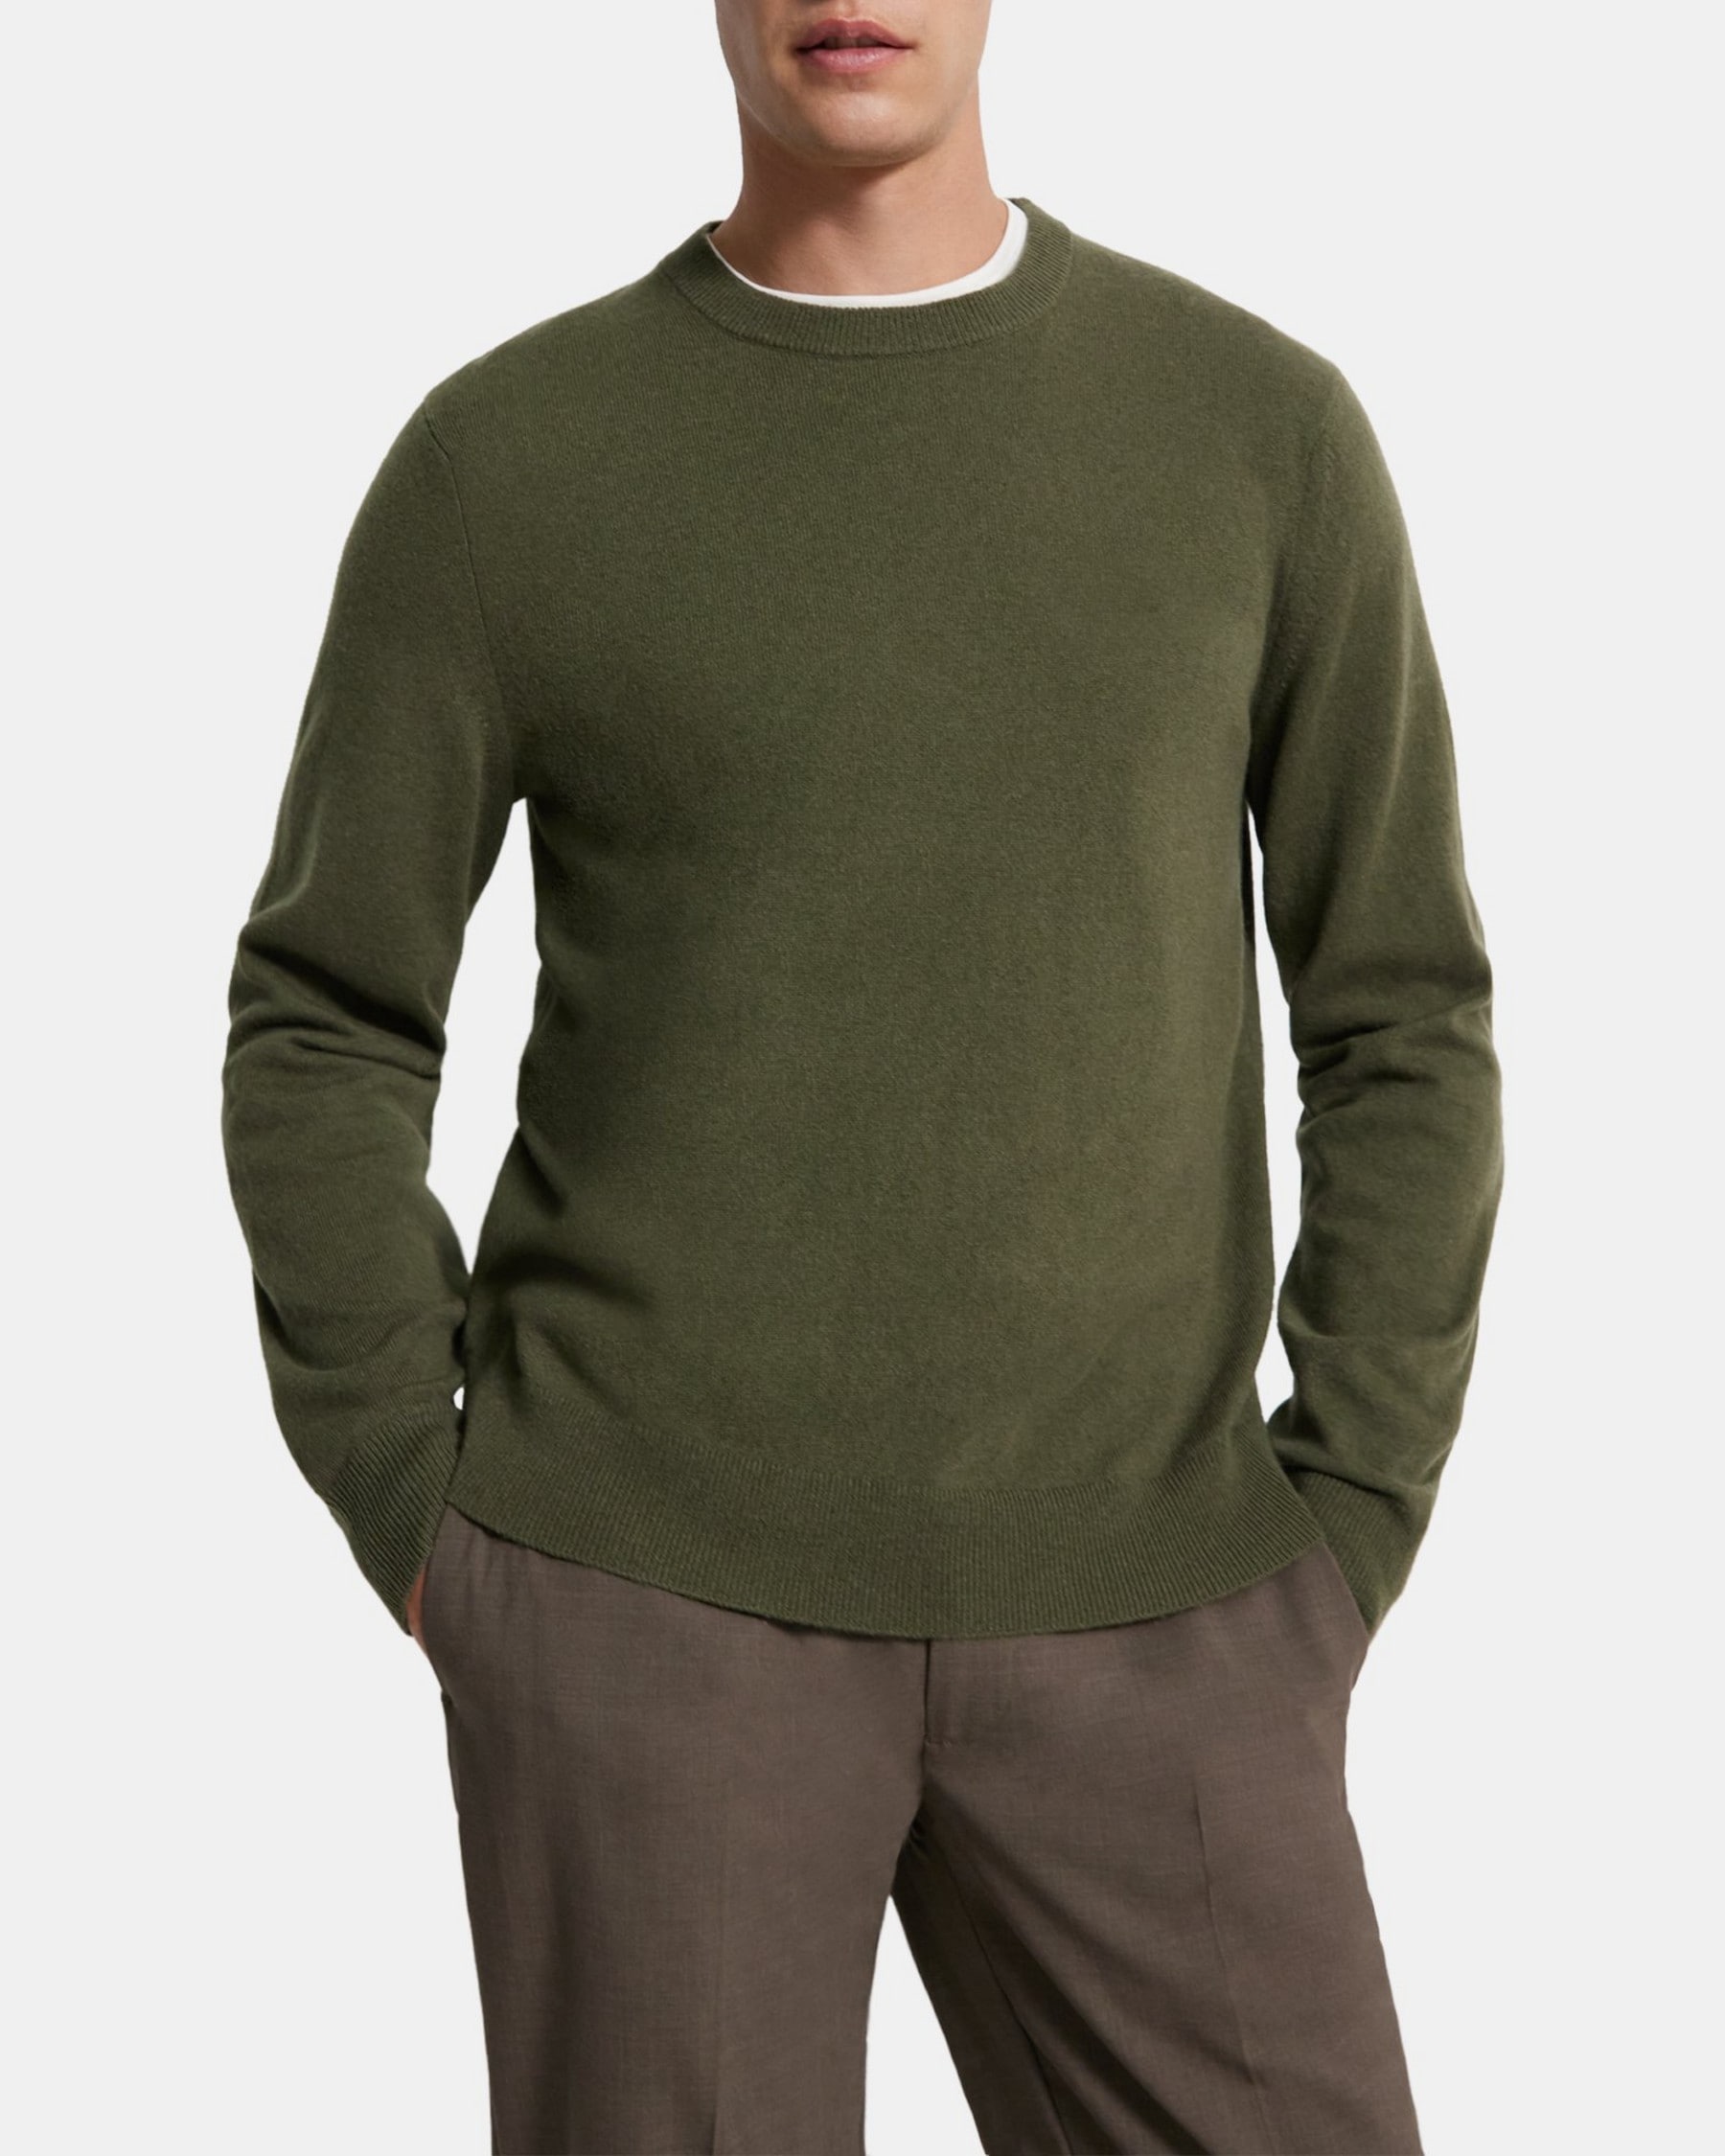 띠어리 Theory Crewneck Sweater in Cashmere,OLIVE BRANCH